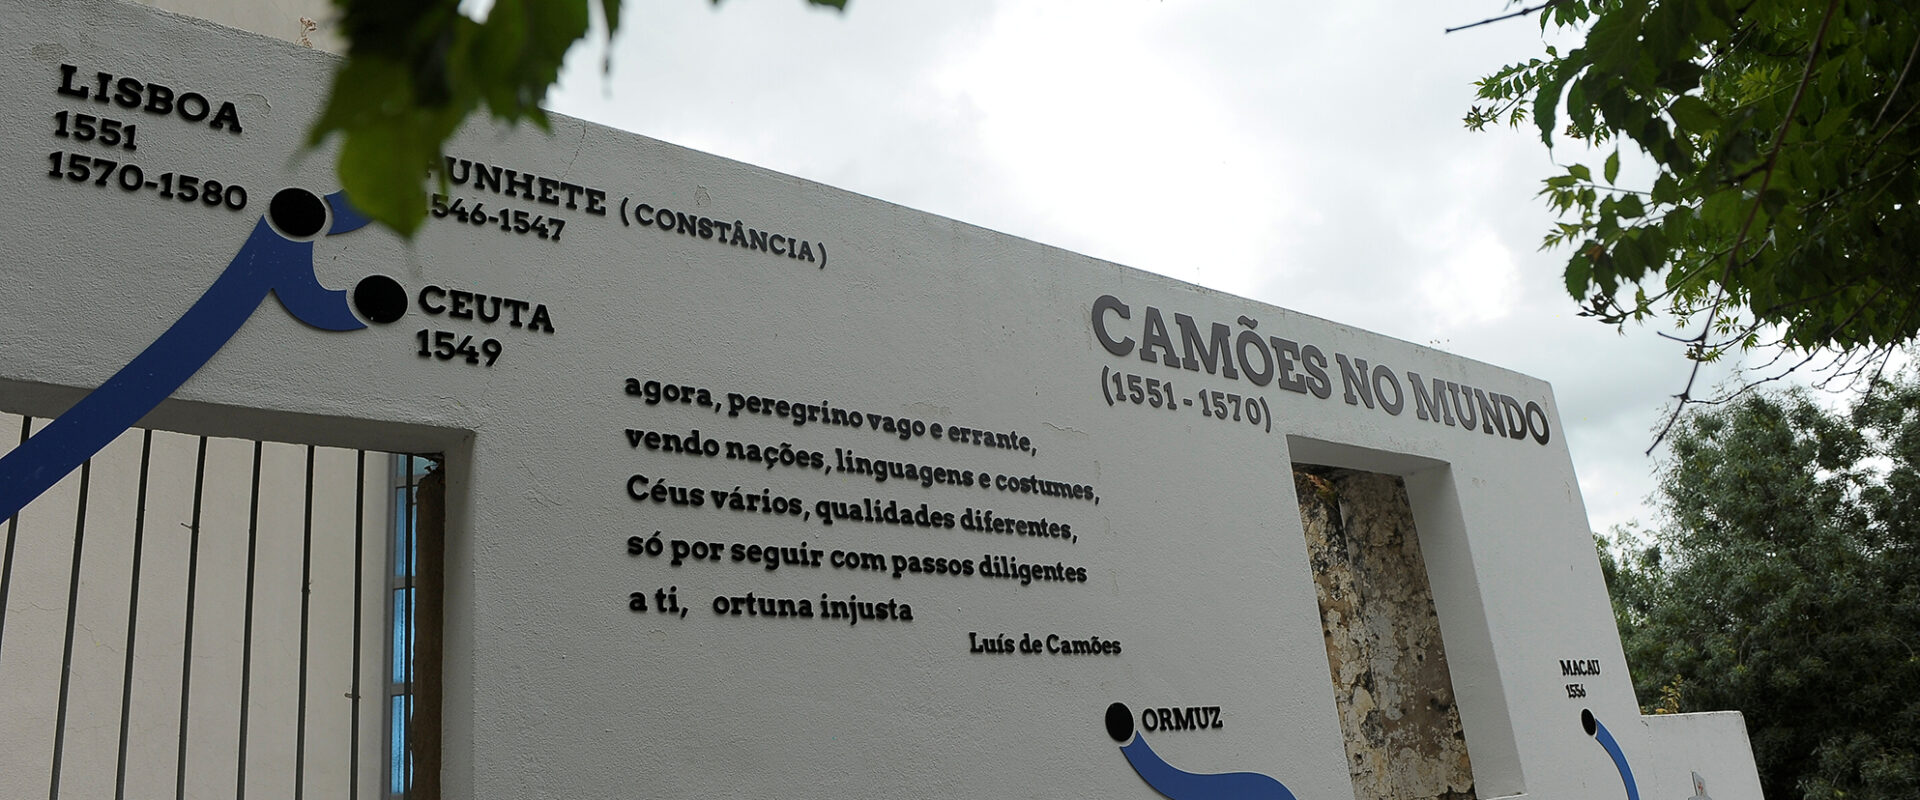 facade of the Casa Camões building in Constância